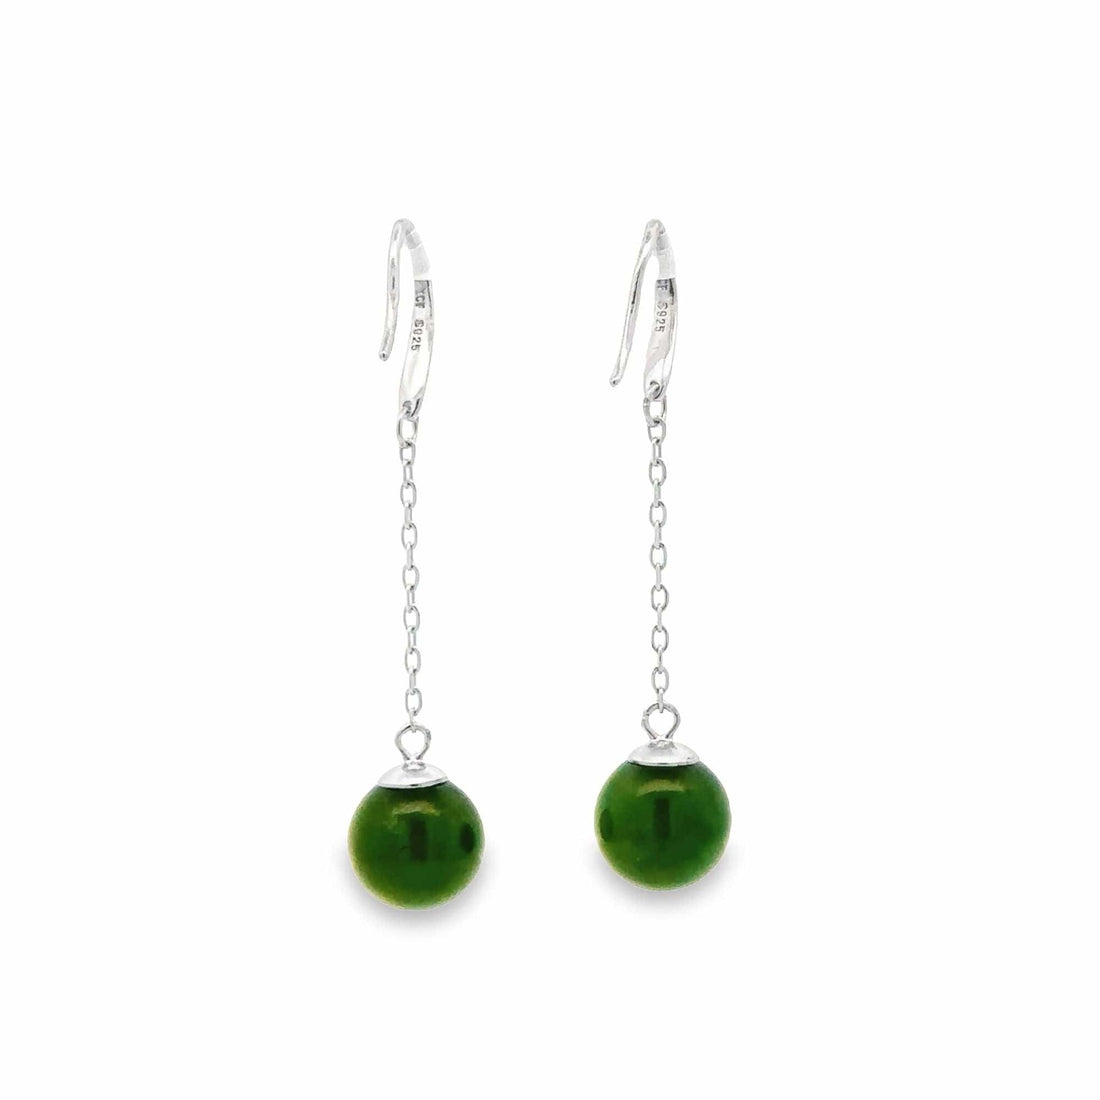 Baikalla Jewelry Silver Gemstone Earrings Baikalla "Classic Bead Earrings" Sterling Silver Genuine Nephrite Green Jade Dangle Earrings